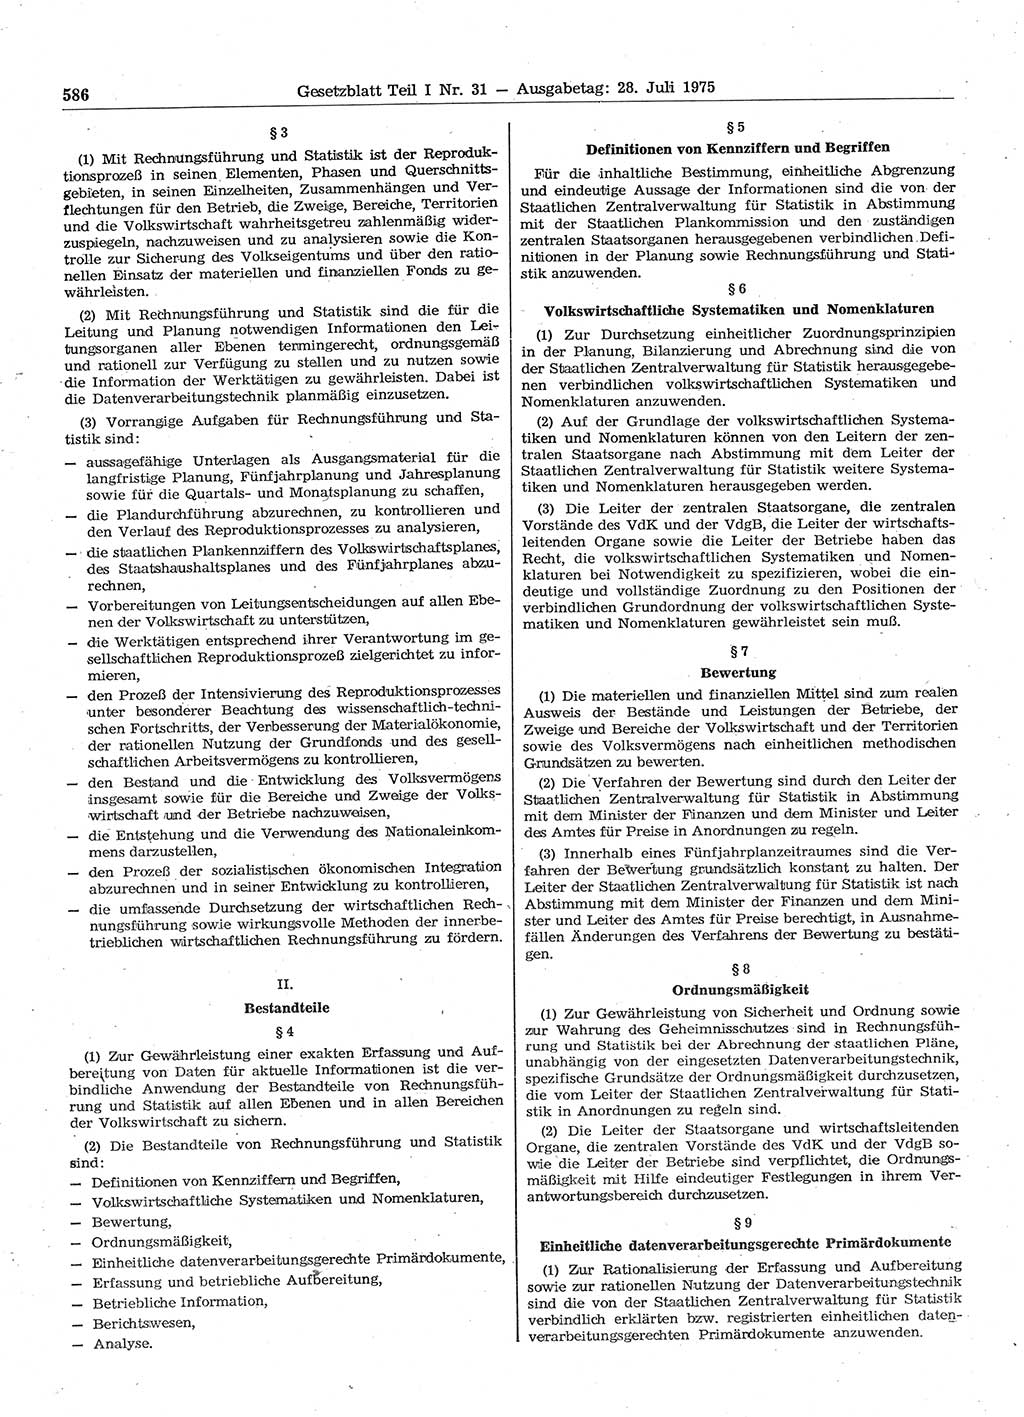 Gesetzblatt (GBl.) der Deutschen Demokratischen Republik (DDR) Teil Ⅰ 1975, Seite 586 (GBl. DDR Ⅰ 1975, S. 586)